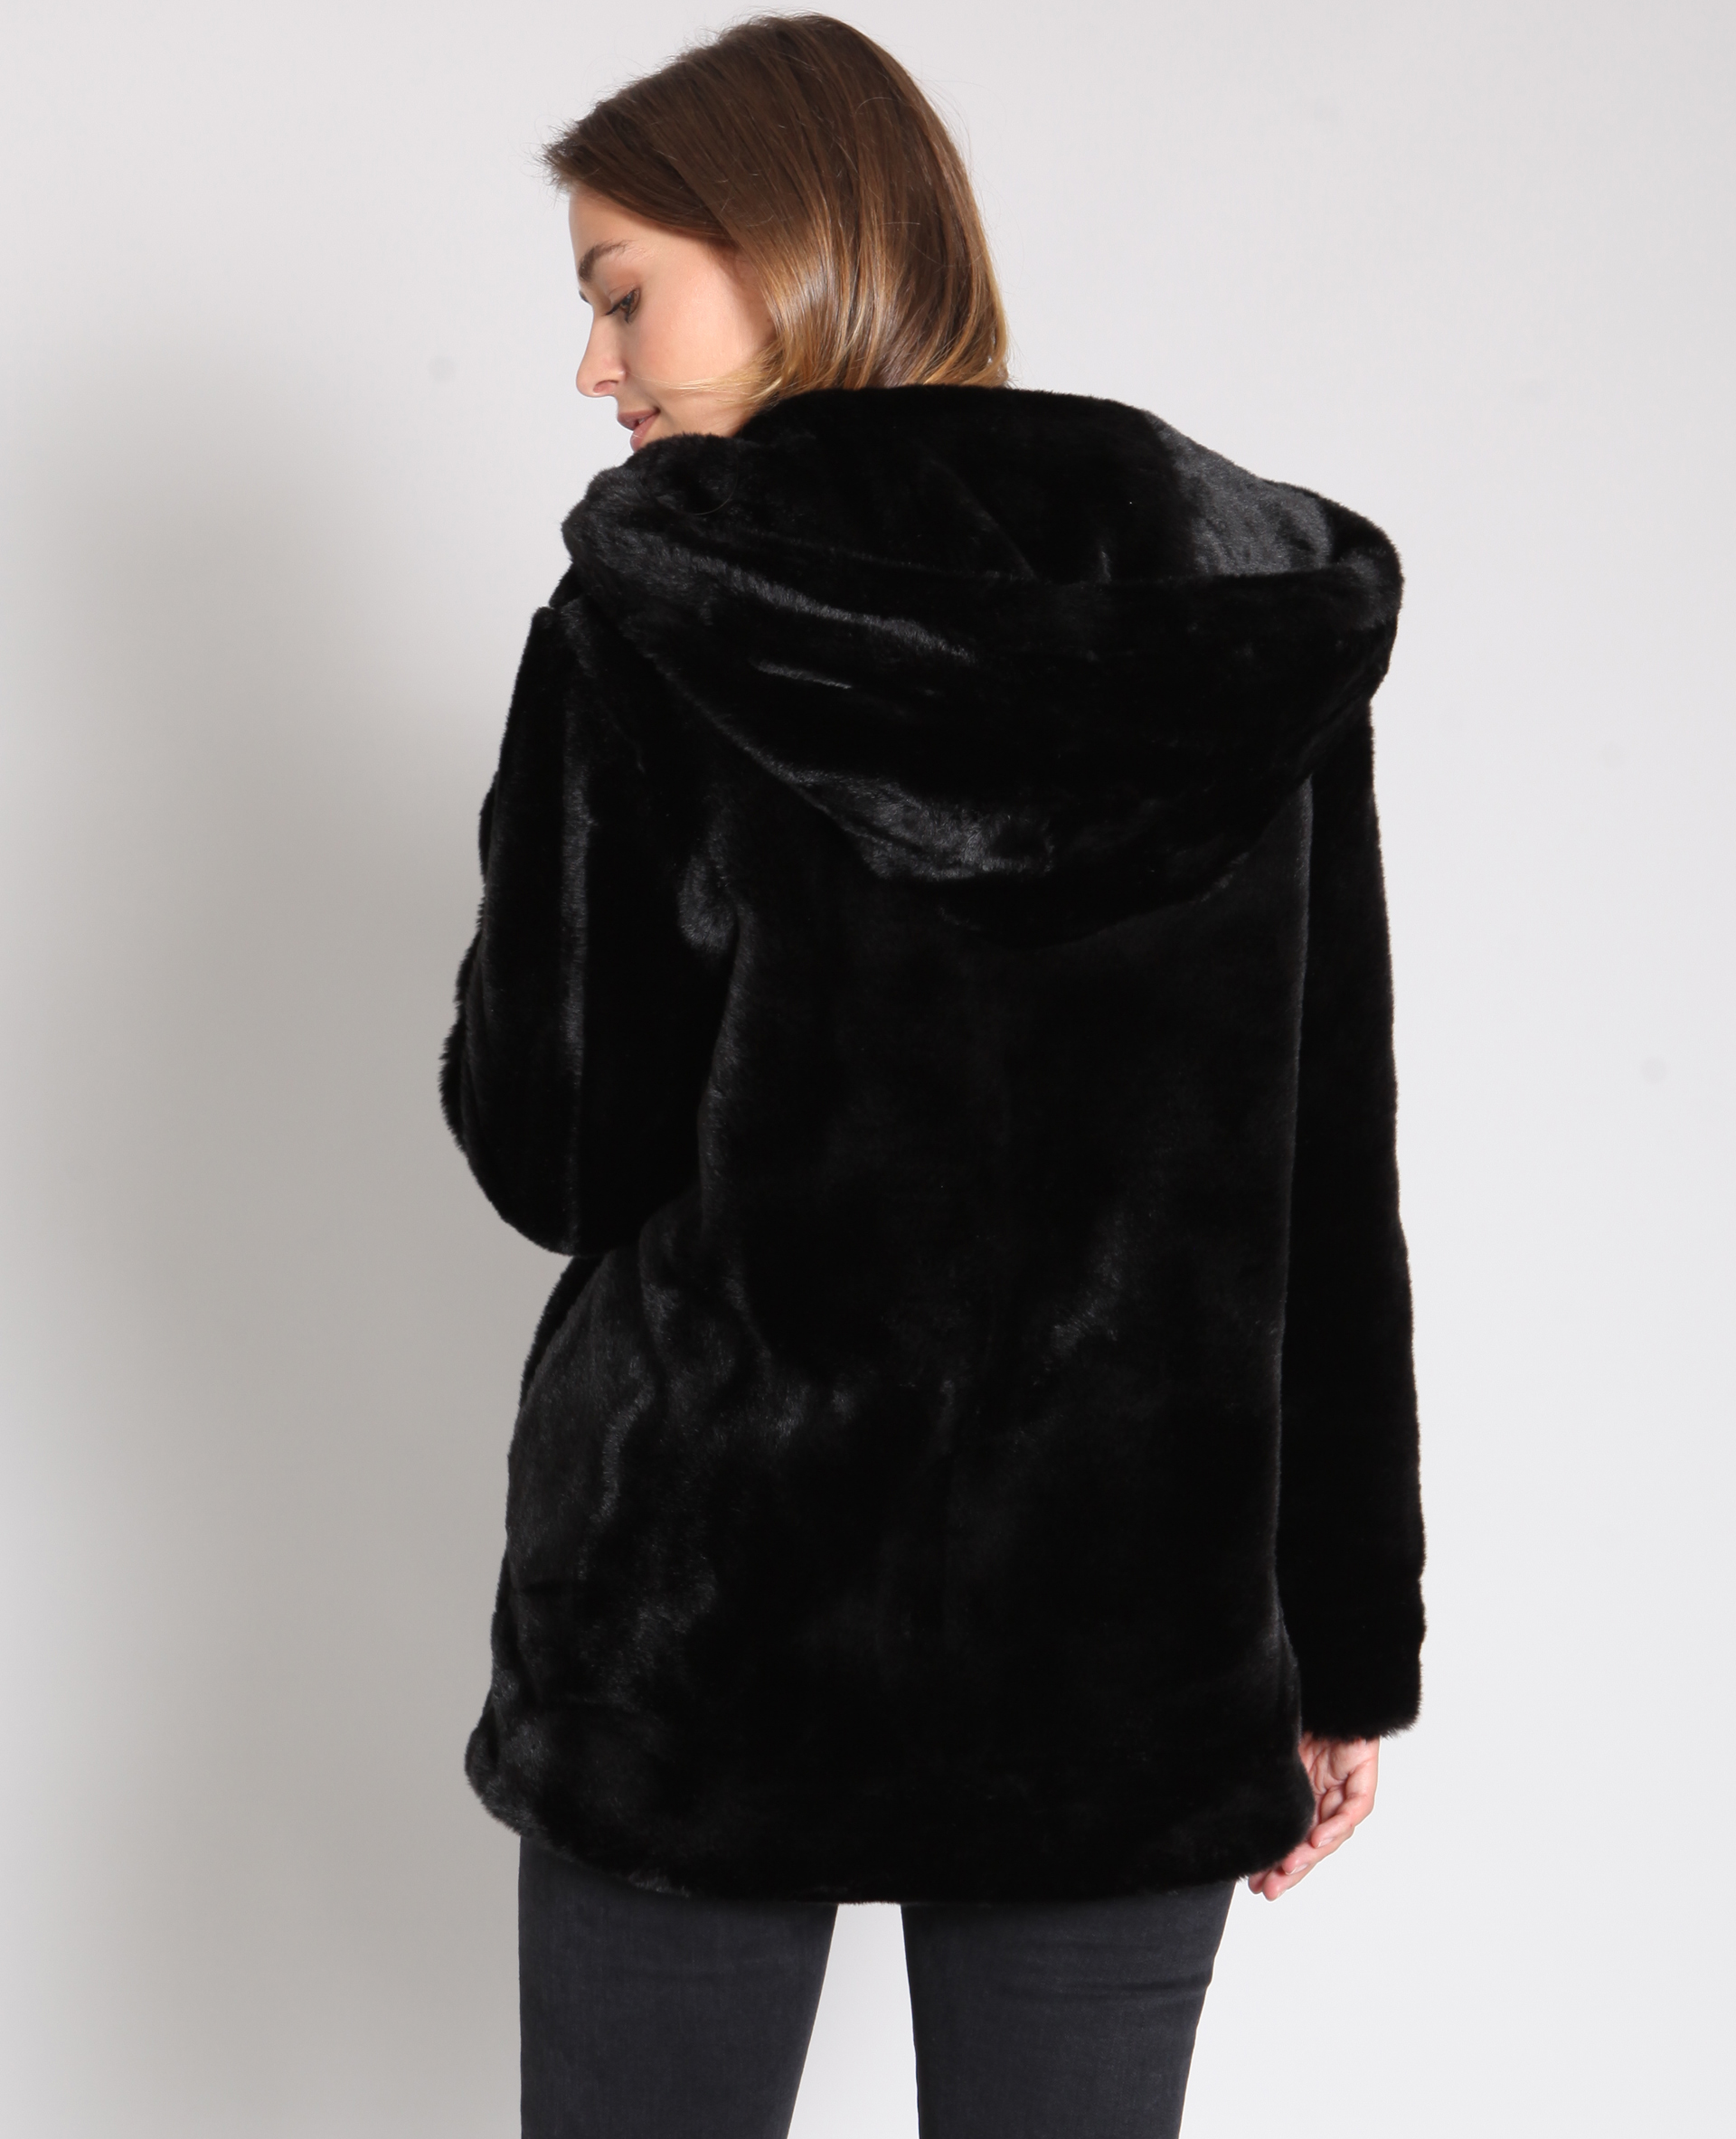 manteau noir femme moumoute